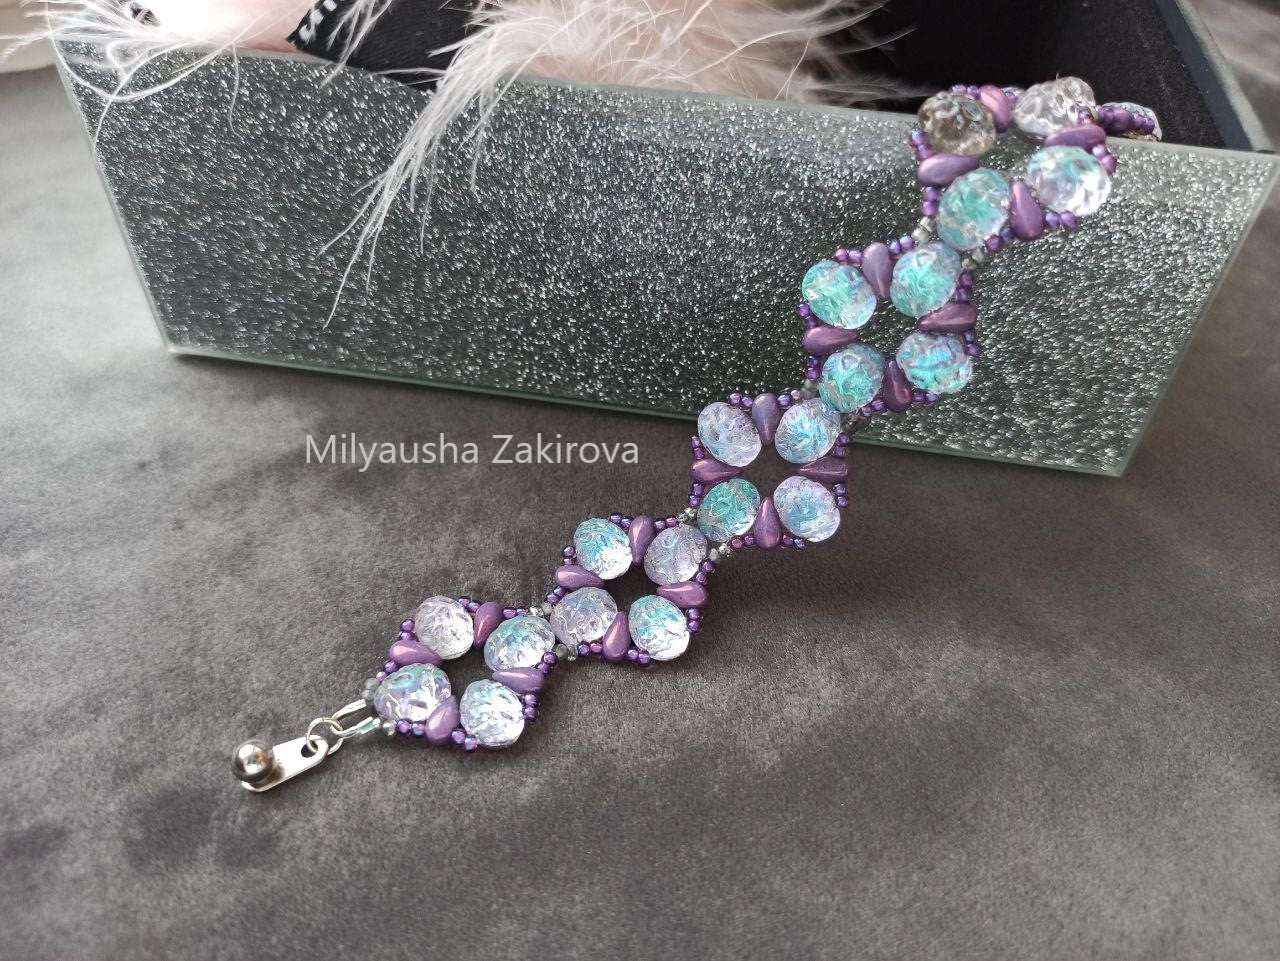 Tutorial "Bracelet Selena" by Milyausha Zakirova